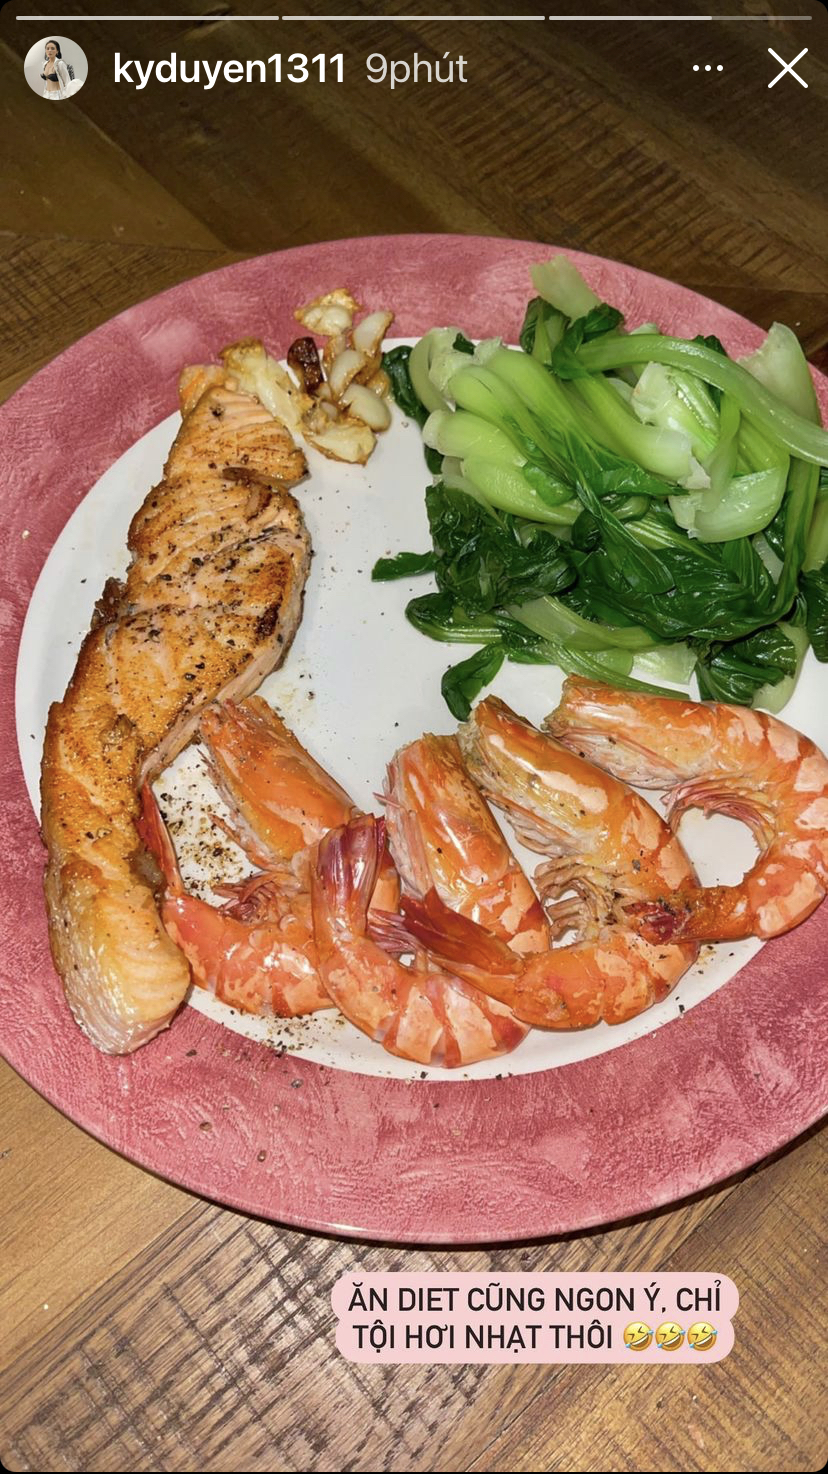 Mặc dù hơi nhạt nhưng đĩa đồ ăn với tôm hấp sả, cá hồi áp chảo và rau cải luộc của Kỳ Duyên vẫn ngon hết ý.